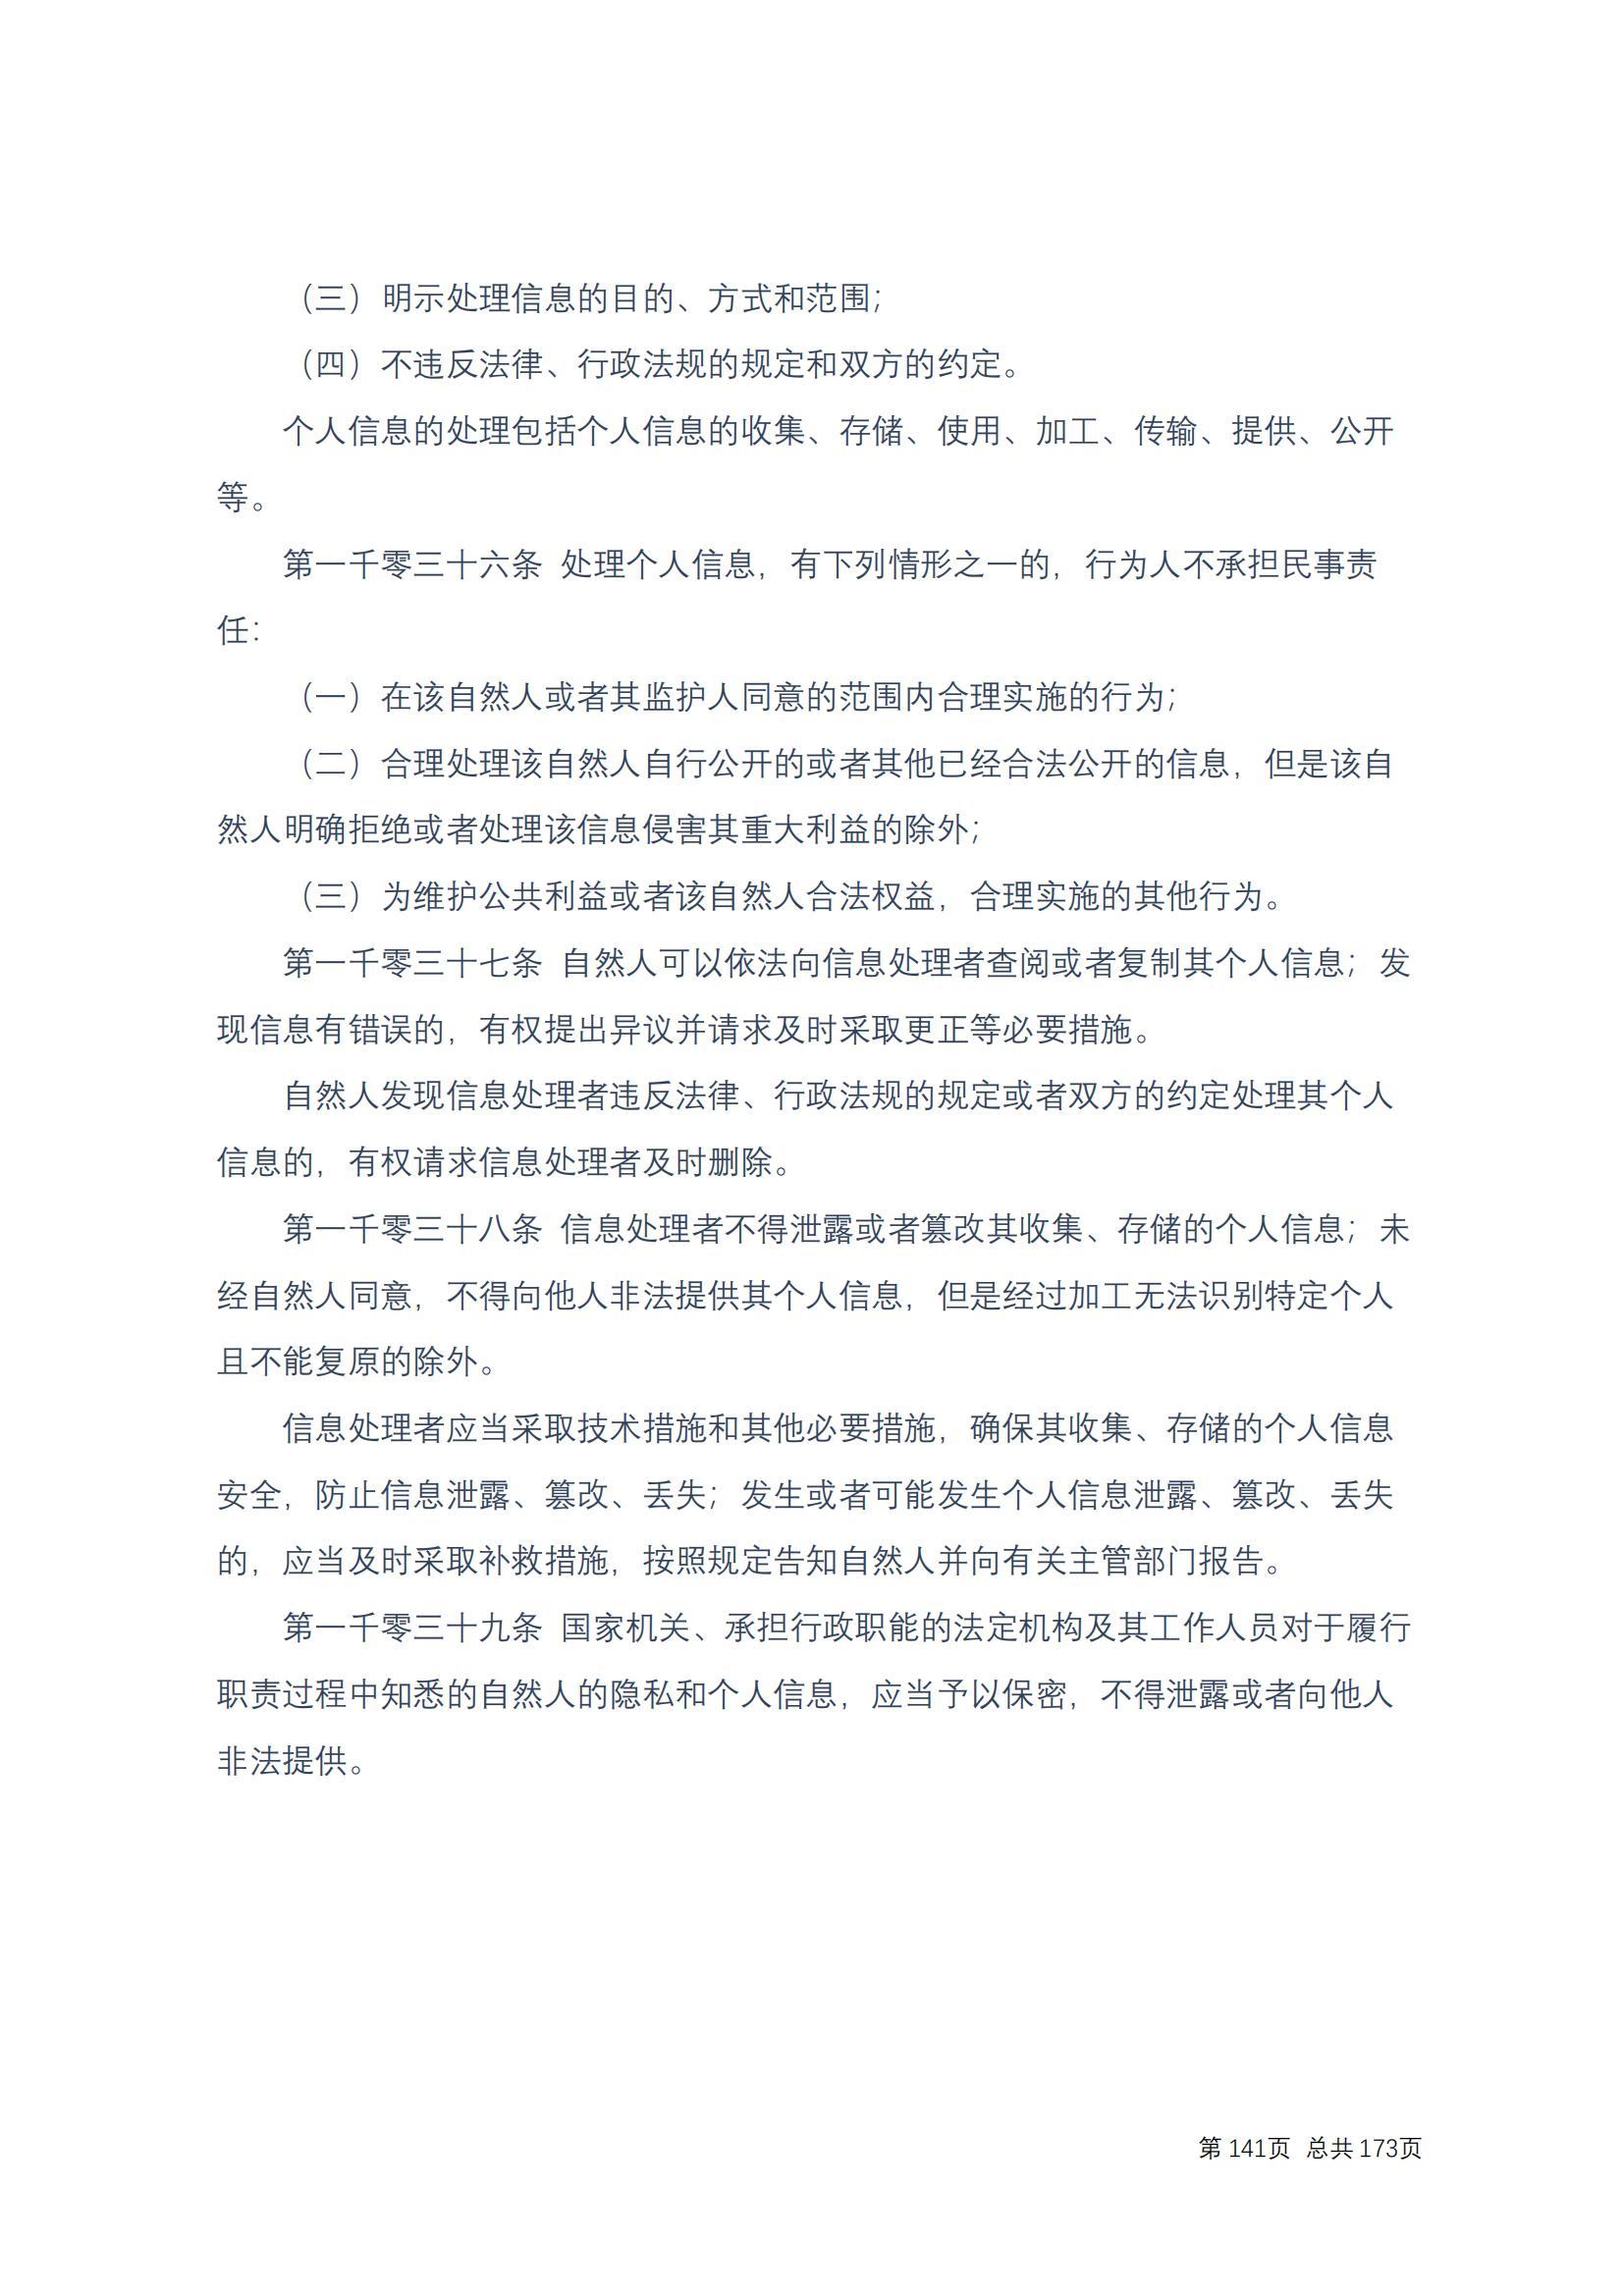 中华人民共和国民法典 修改过_140